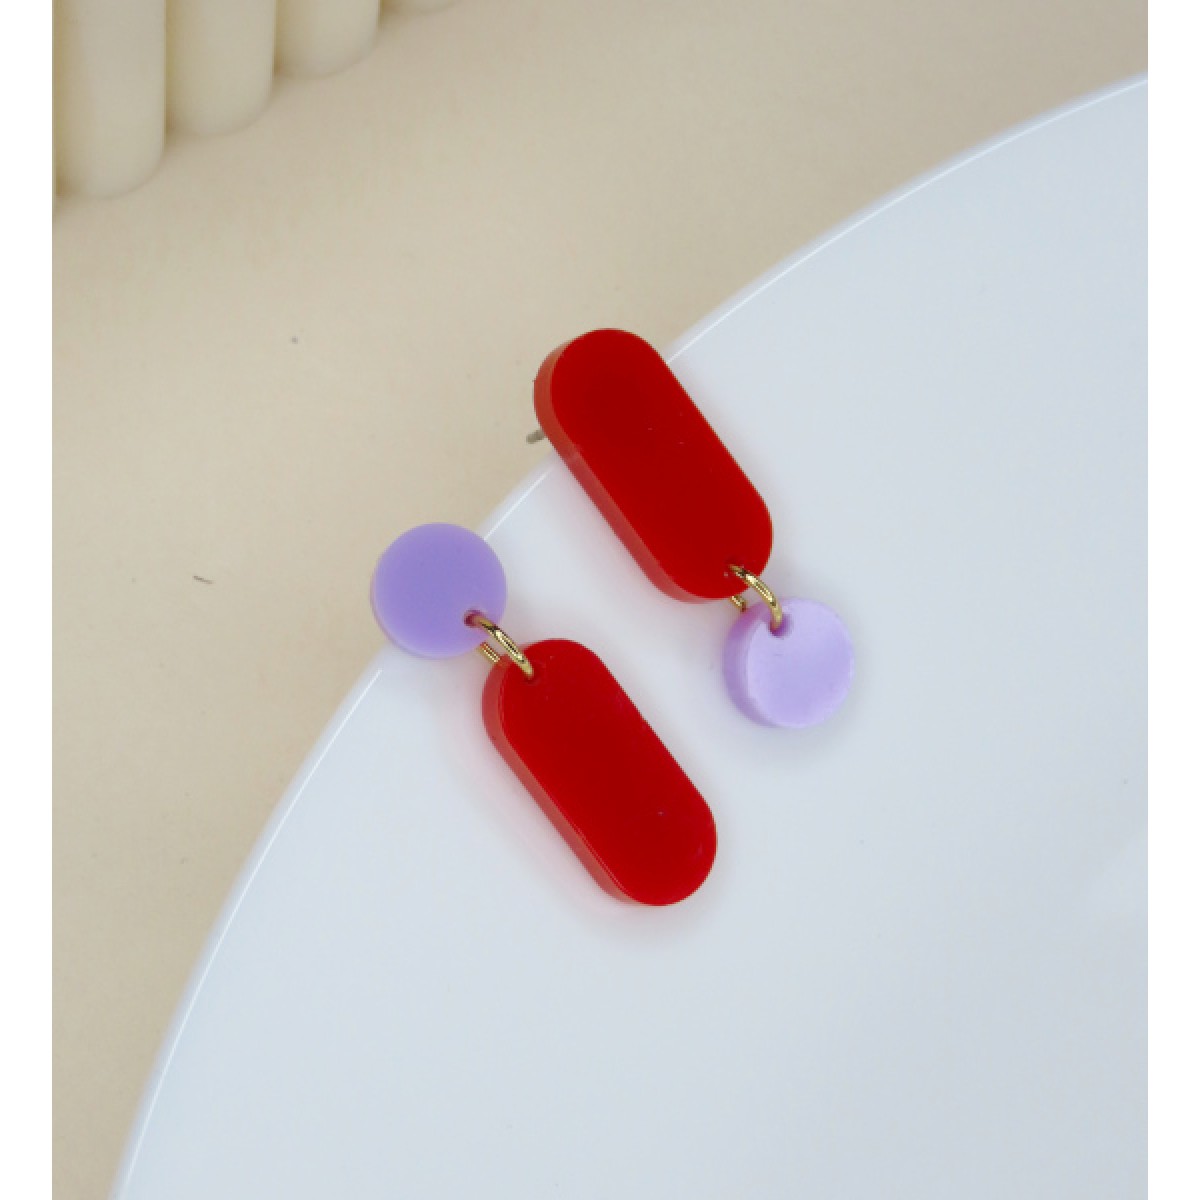 niemalsmehrohne - Claire 2 asymmetrische Ohrringe in rot flieder